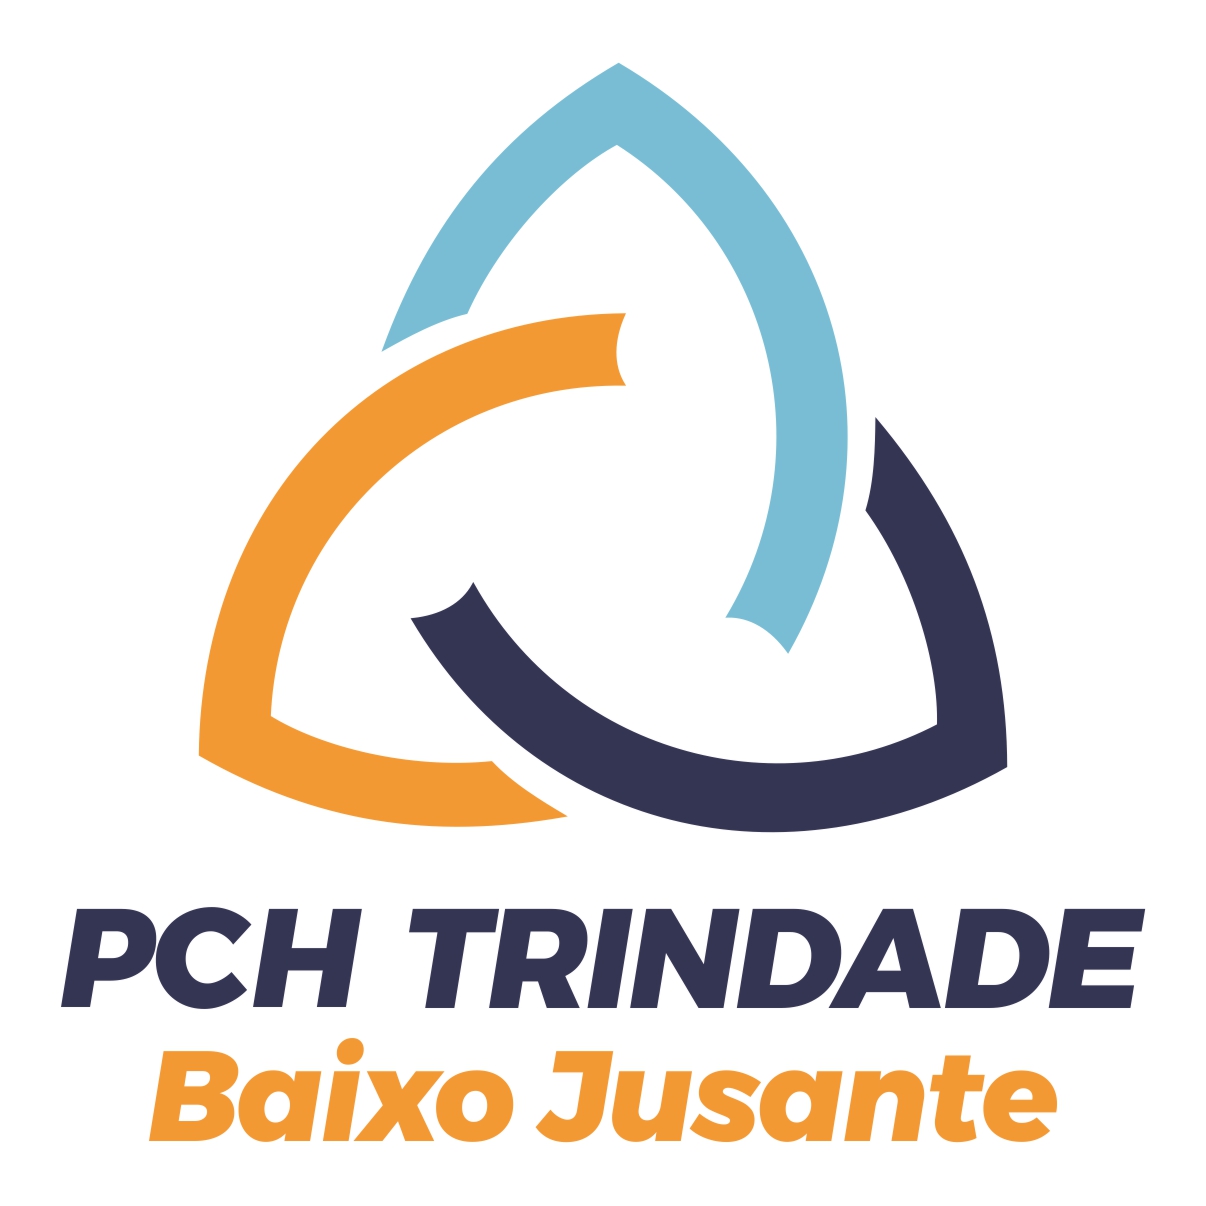 PCH Trindade Baixo Jusante